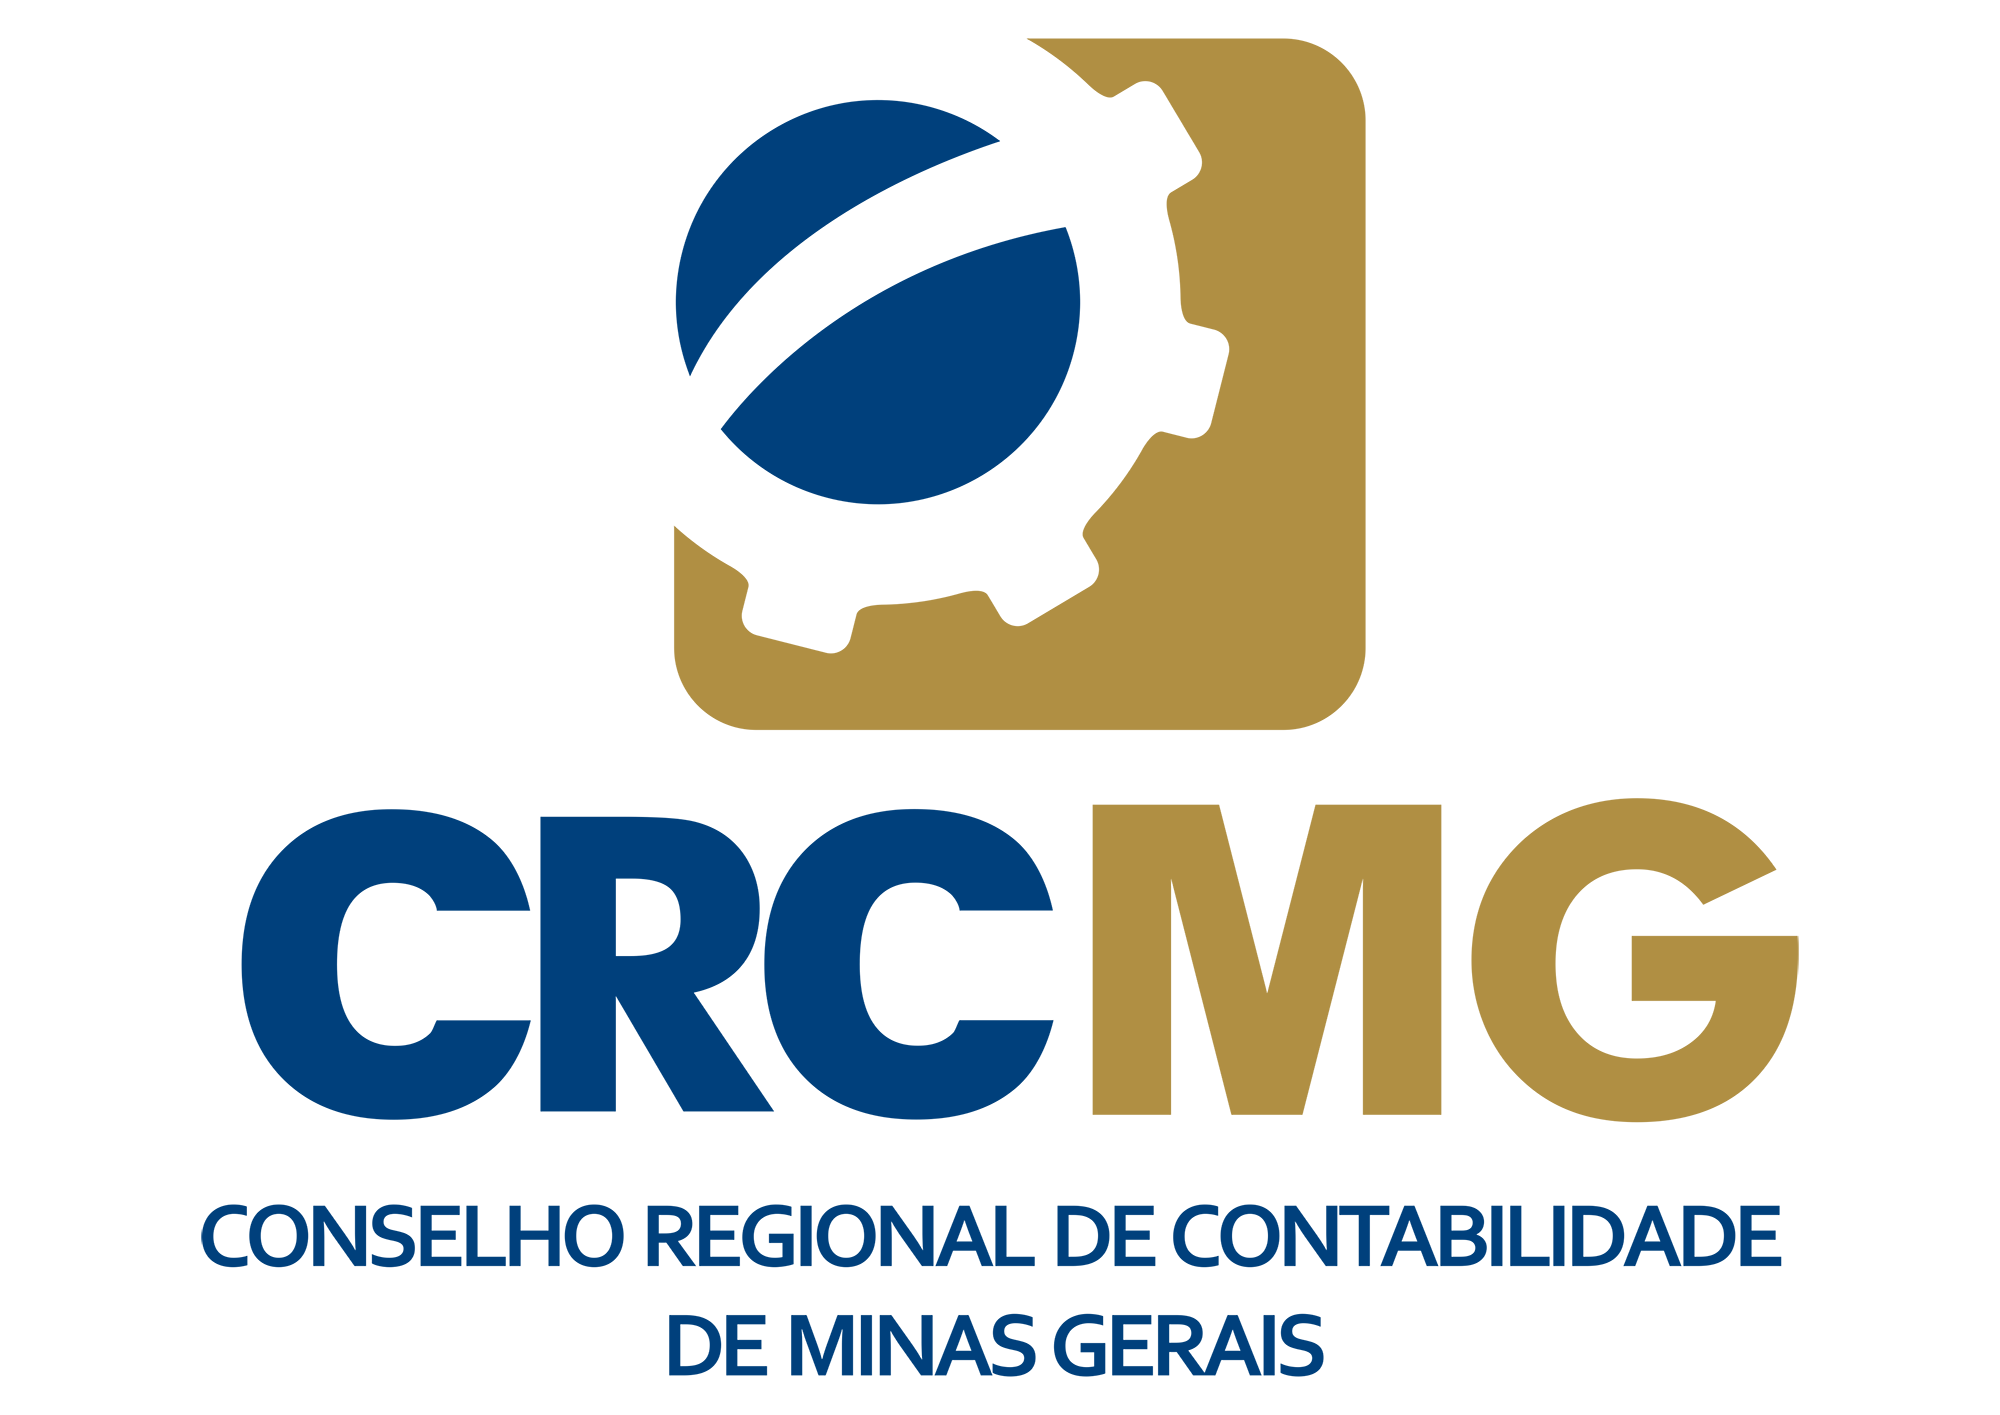 CRCMG promove Seminário de Integração Regional voltado para capacitar os profissionais da Contabilidade